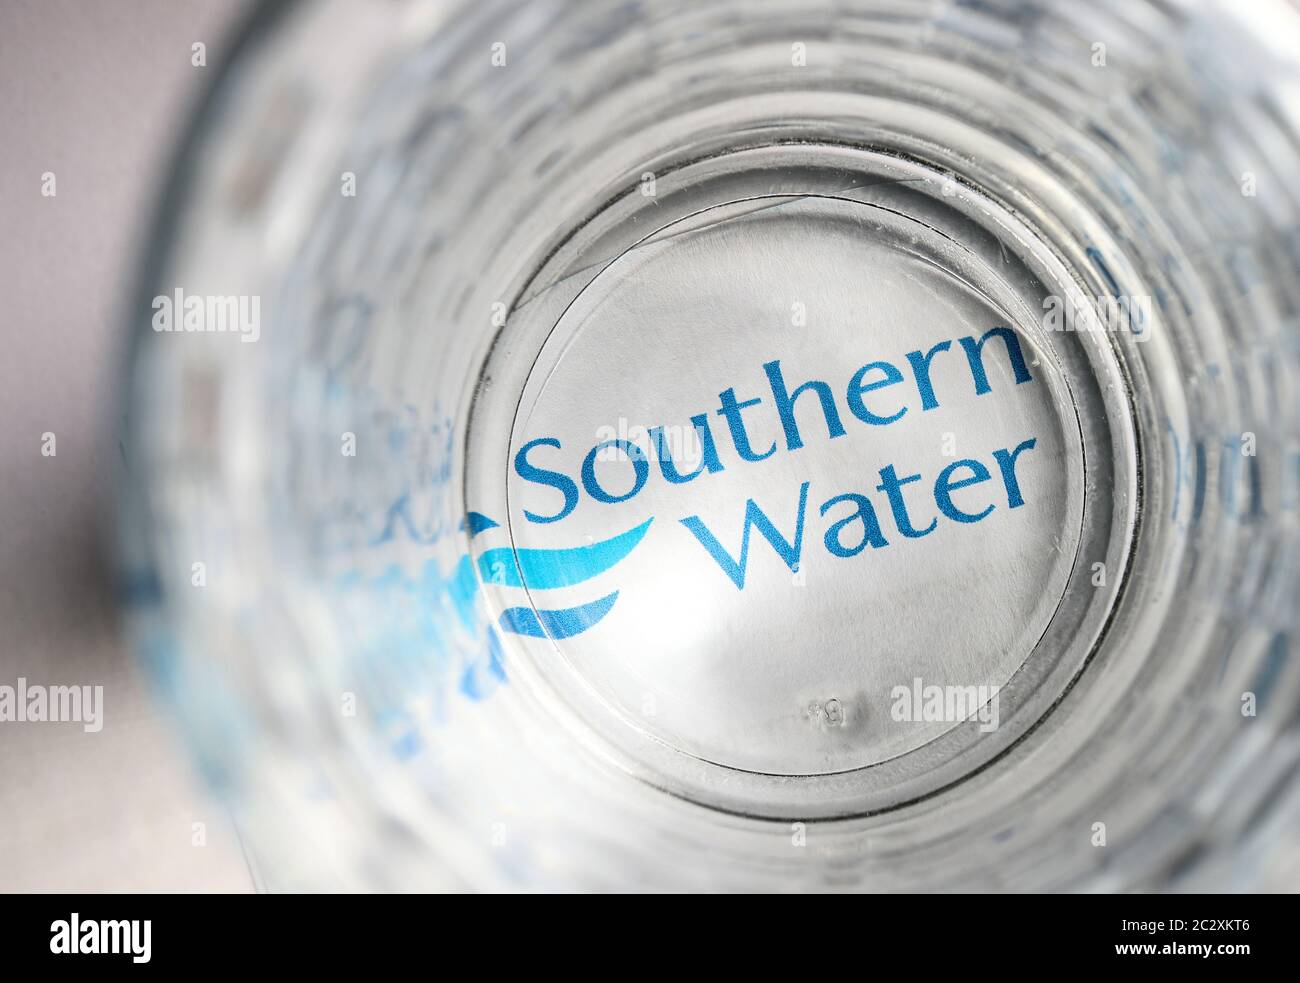 Südstaaten-Wasserrechnung mit einem Glas Wasser Stockfoto